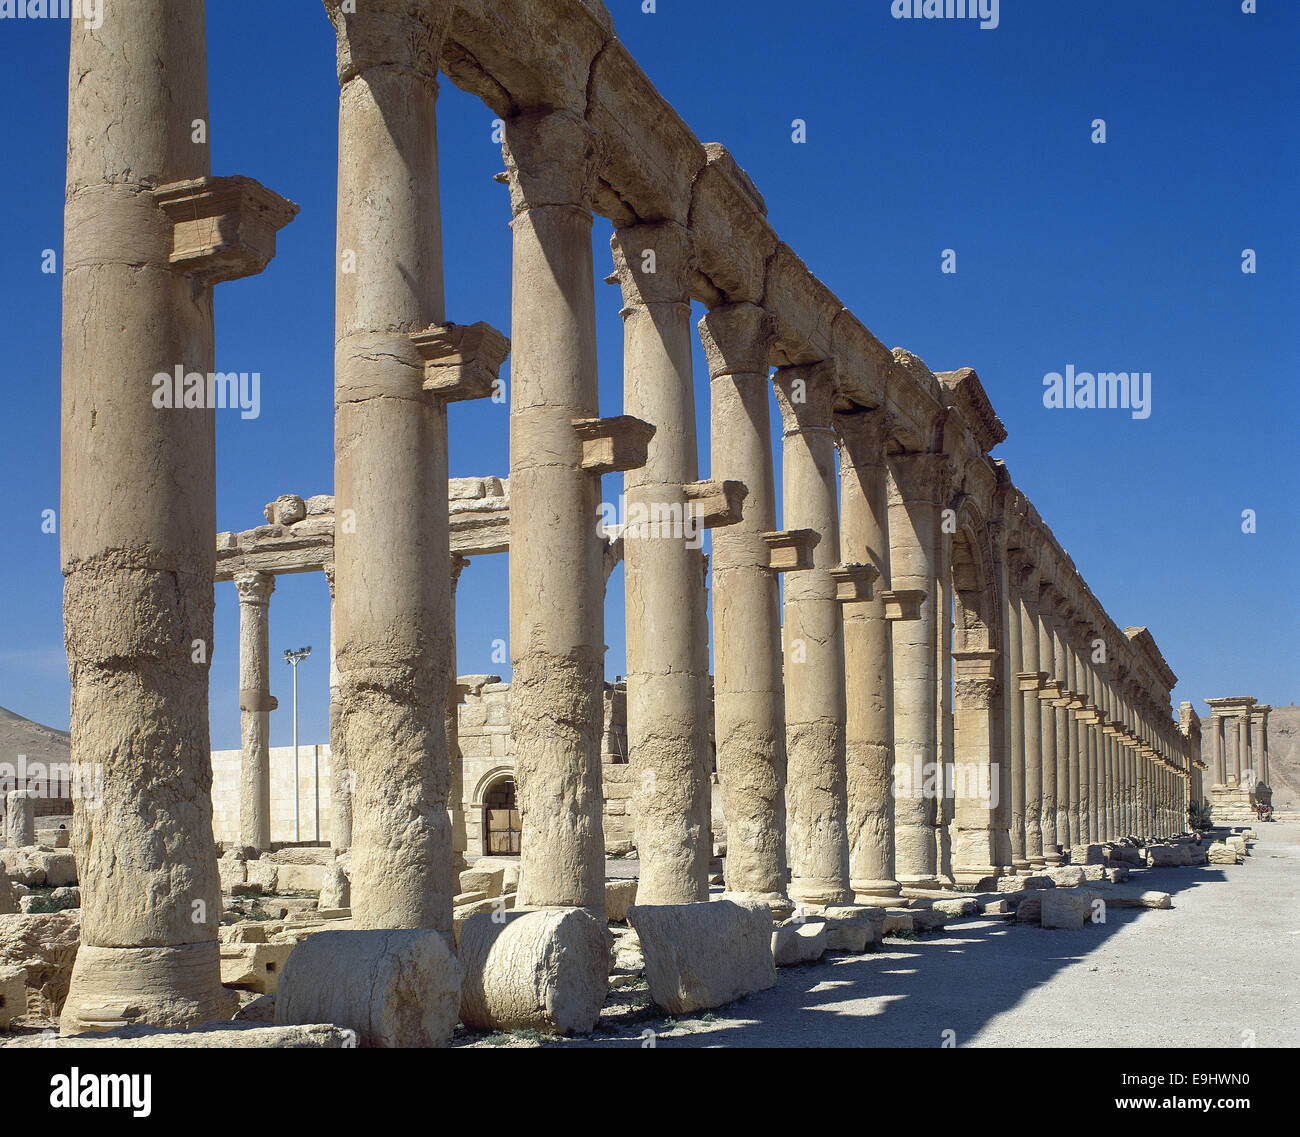 La Siria. Rovine di Palmyra. Medio Oriente. Colonnato. Iii secolo D.C. Oasis Tadmor. Foto Stock